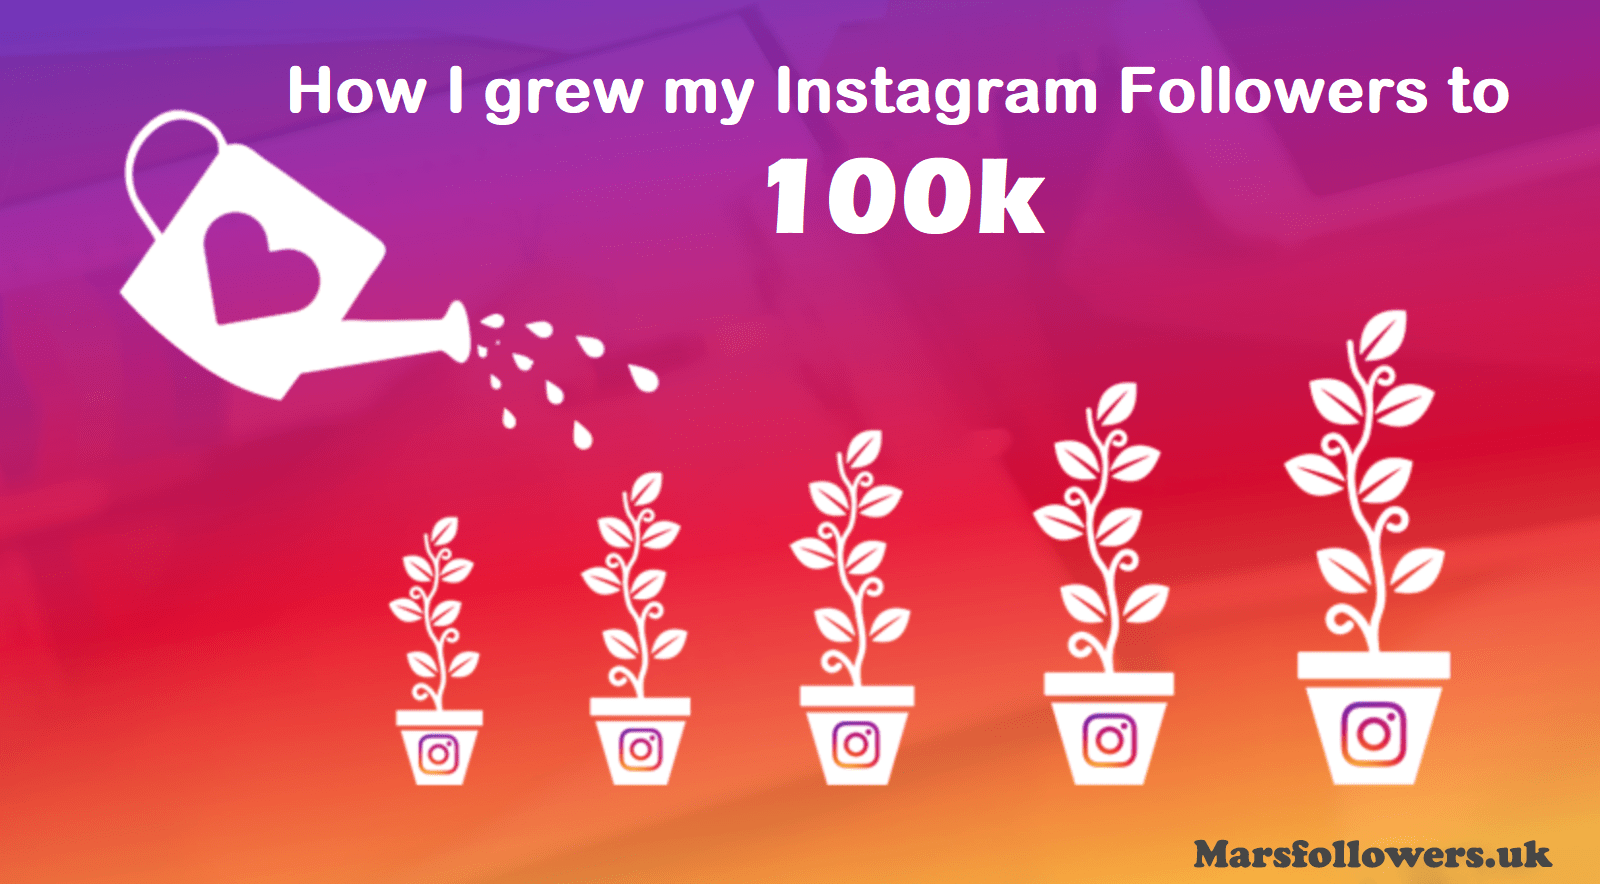 How I grew my Instagram Followers to 100k